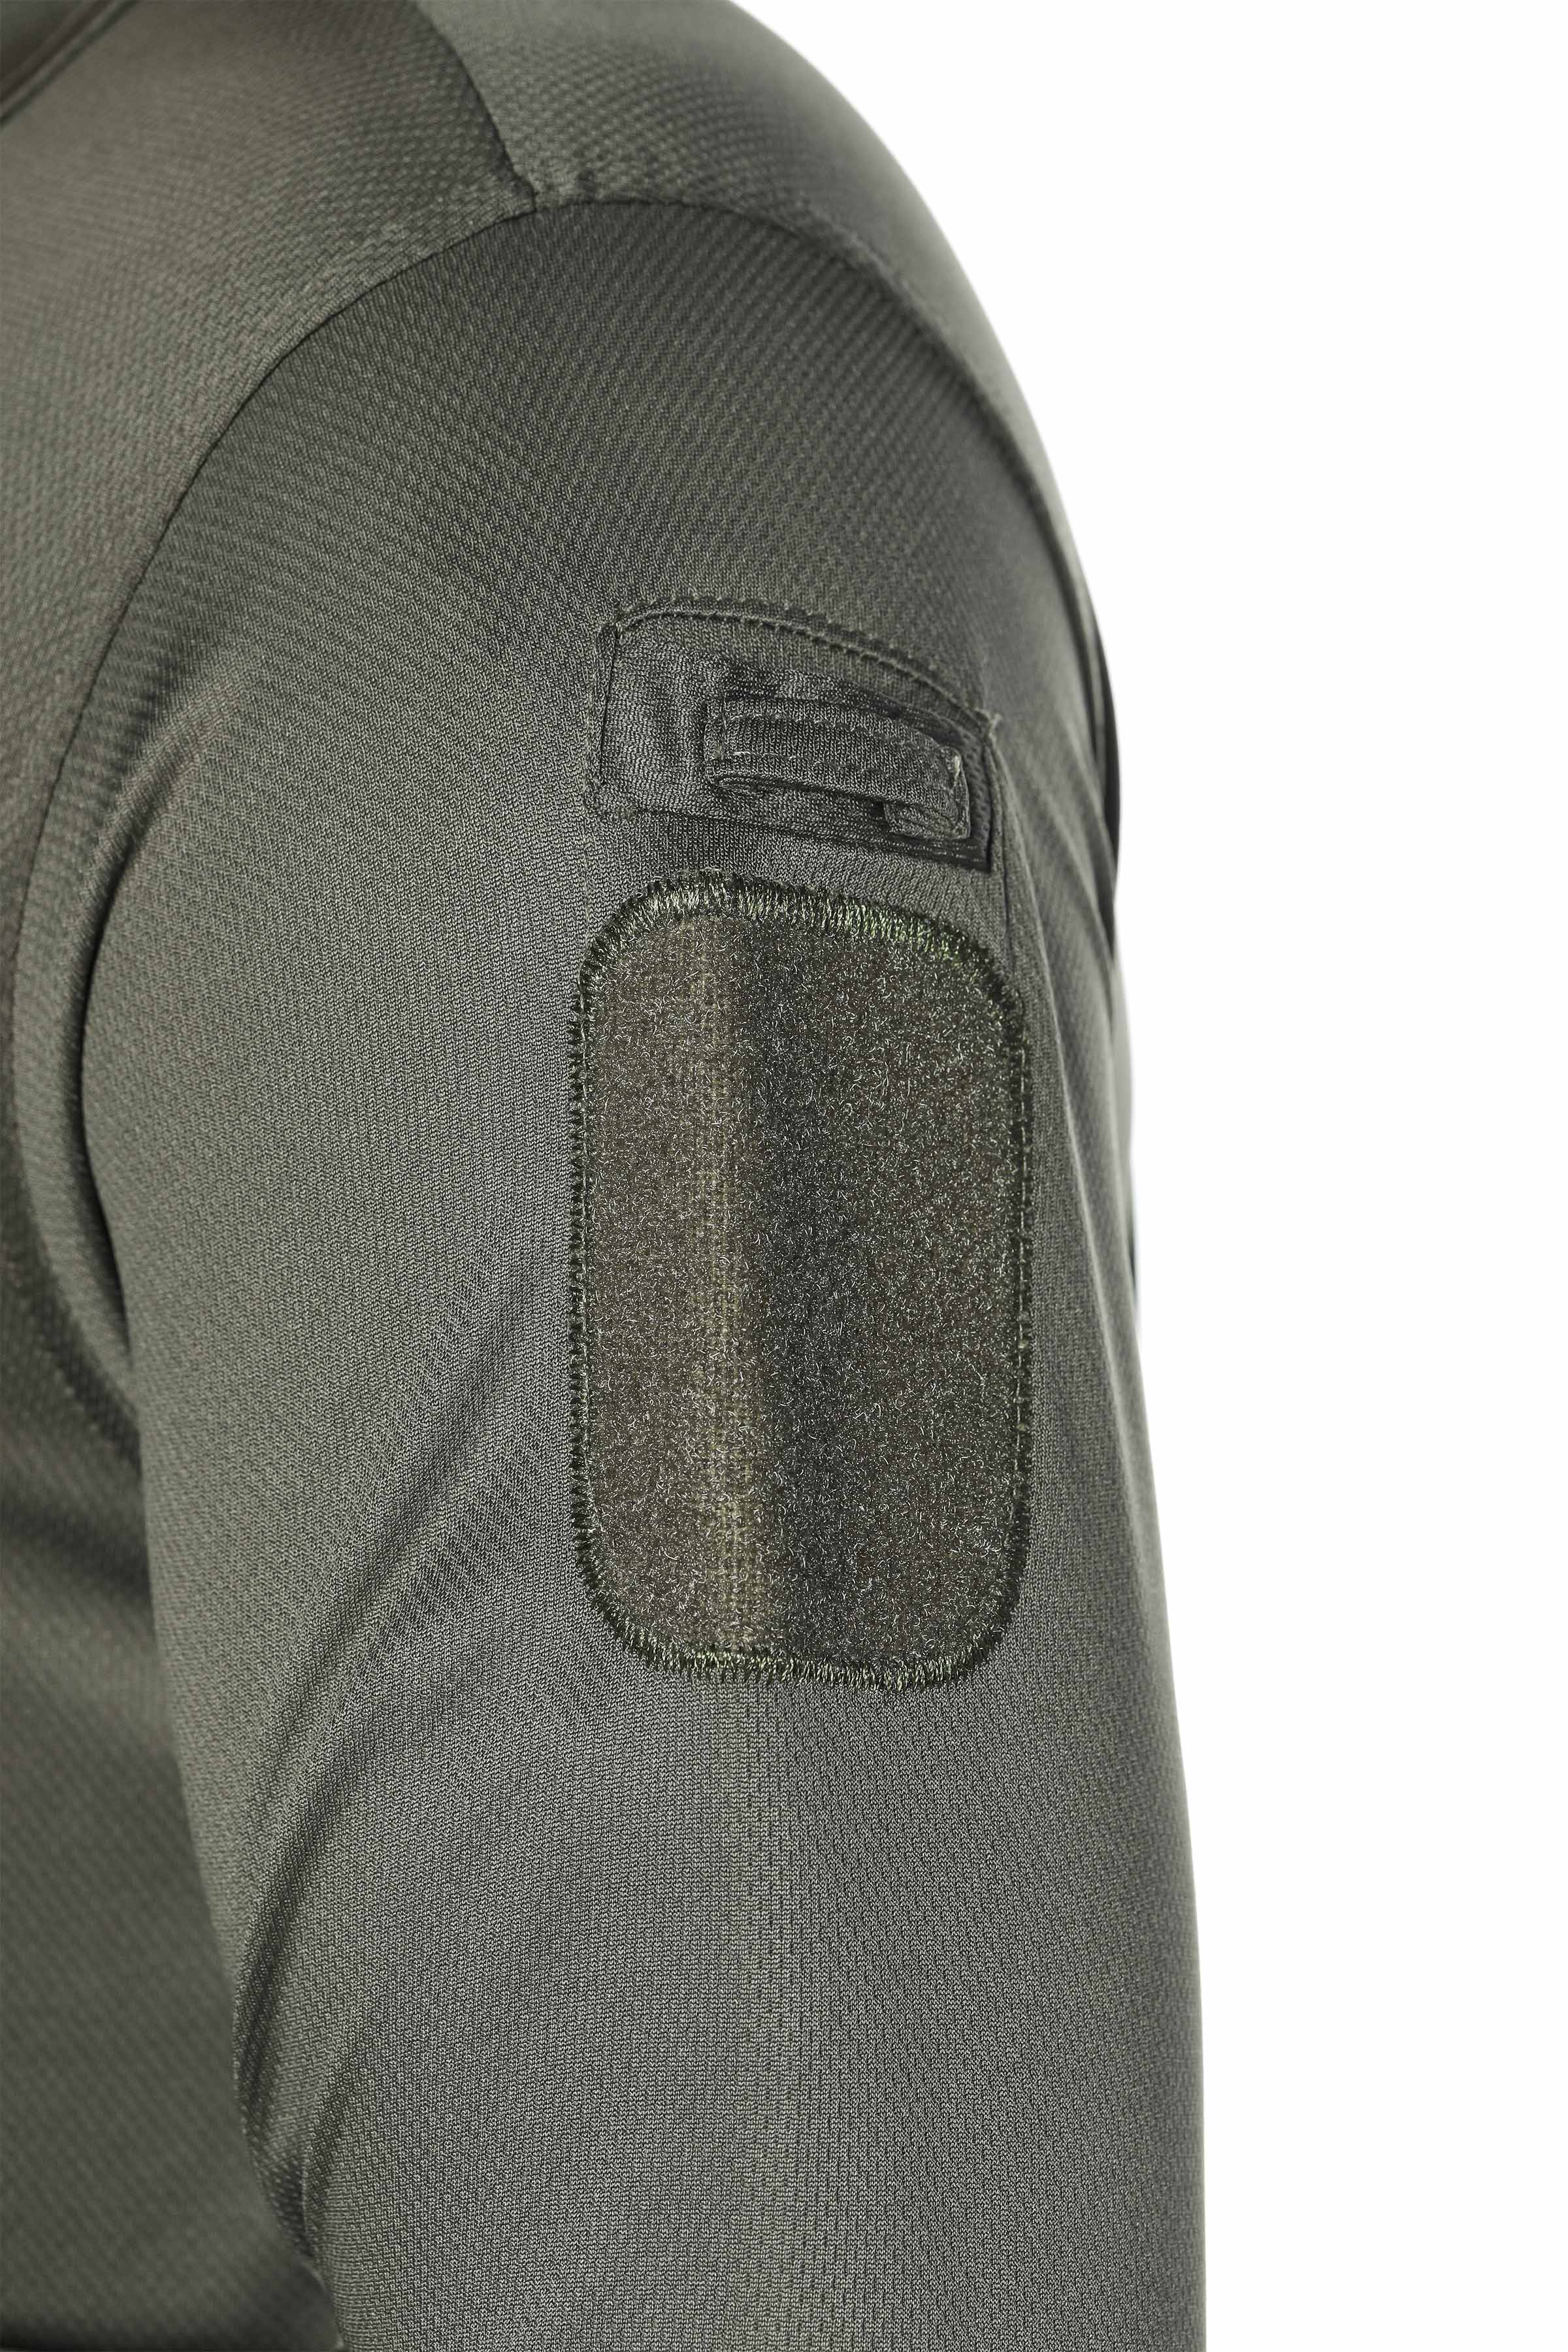 Haki Tactical Tşört , Microfibre Tactical Tşört